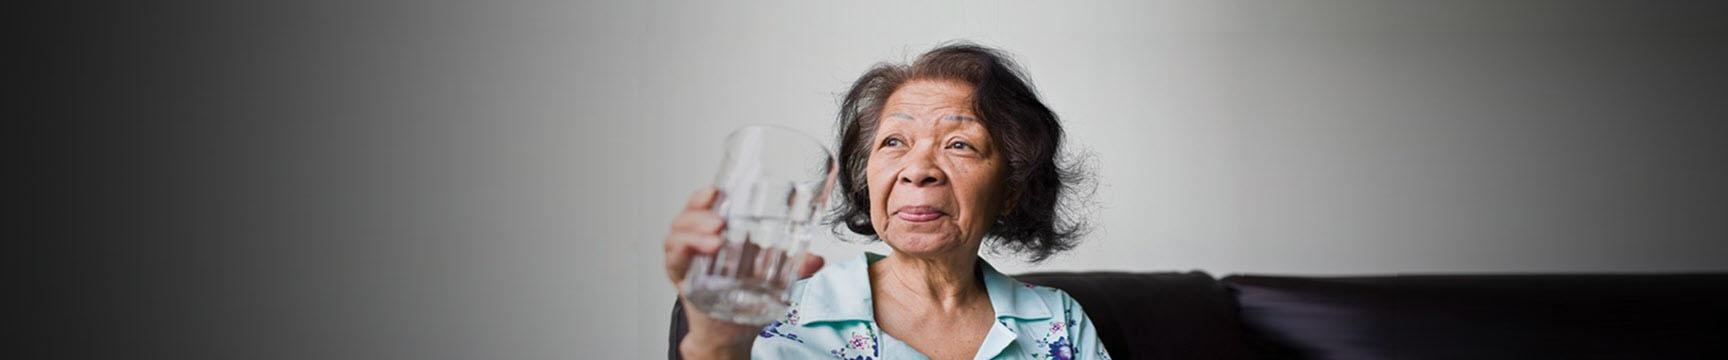 Mujeres bebiendo un vaso de agua